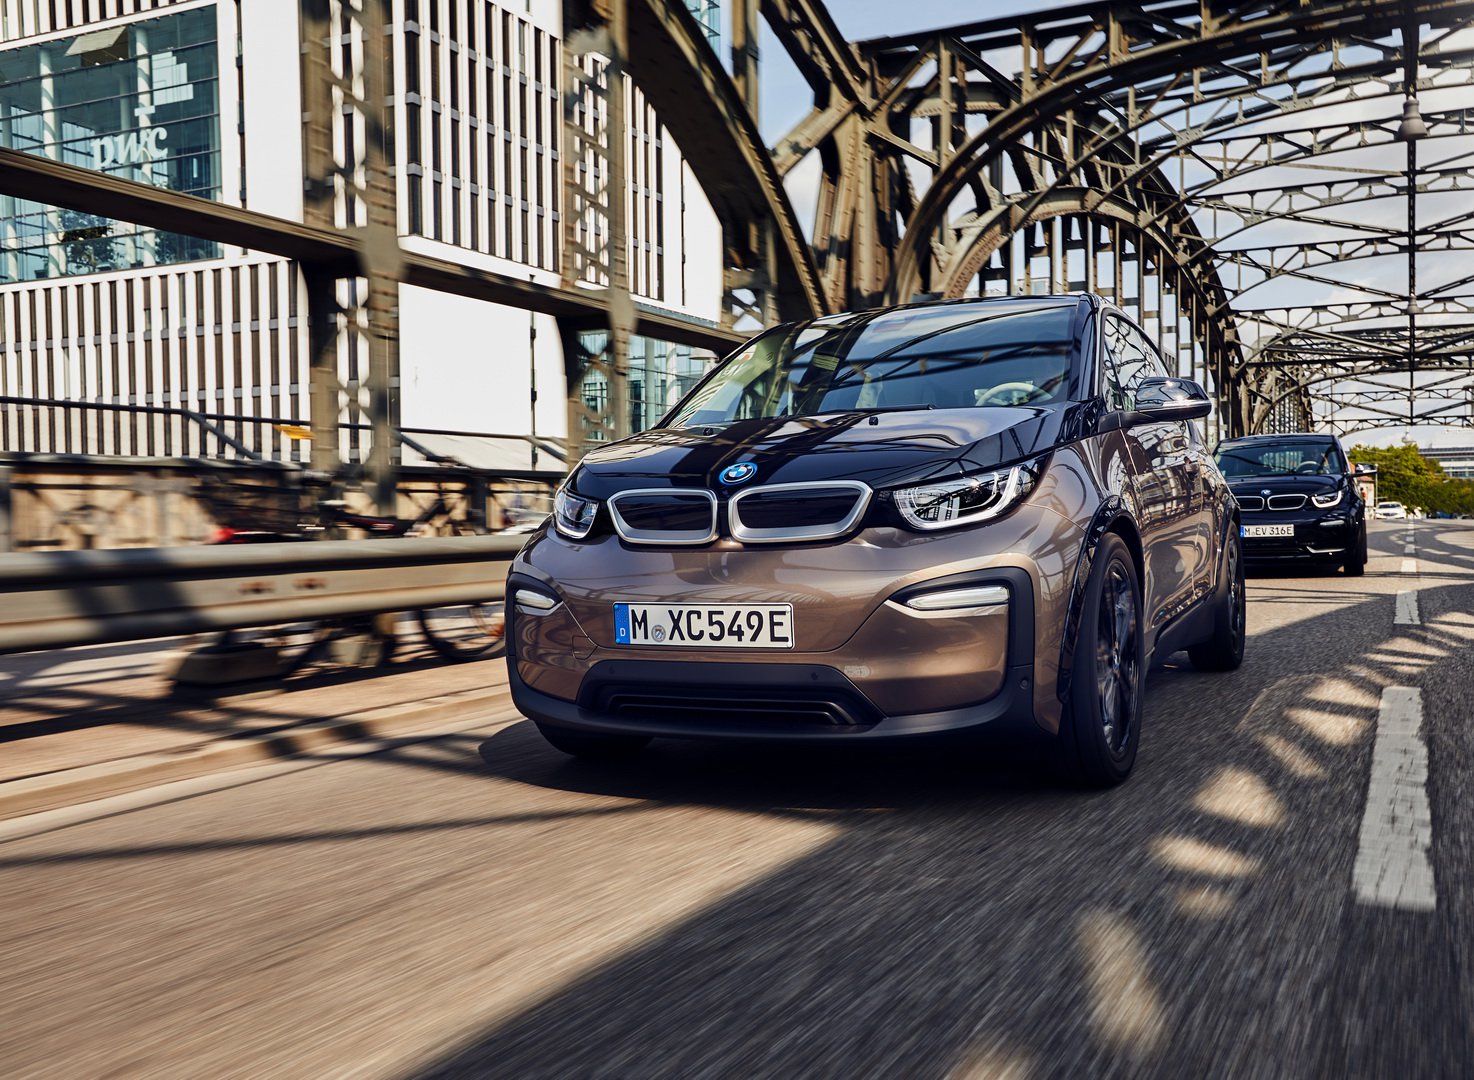 2019 BMW i3, 310 kilometrelik menziliyle tanıtıldı